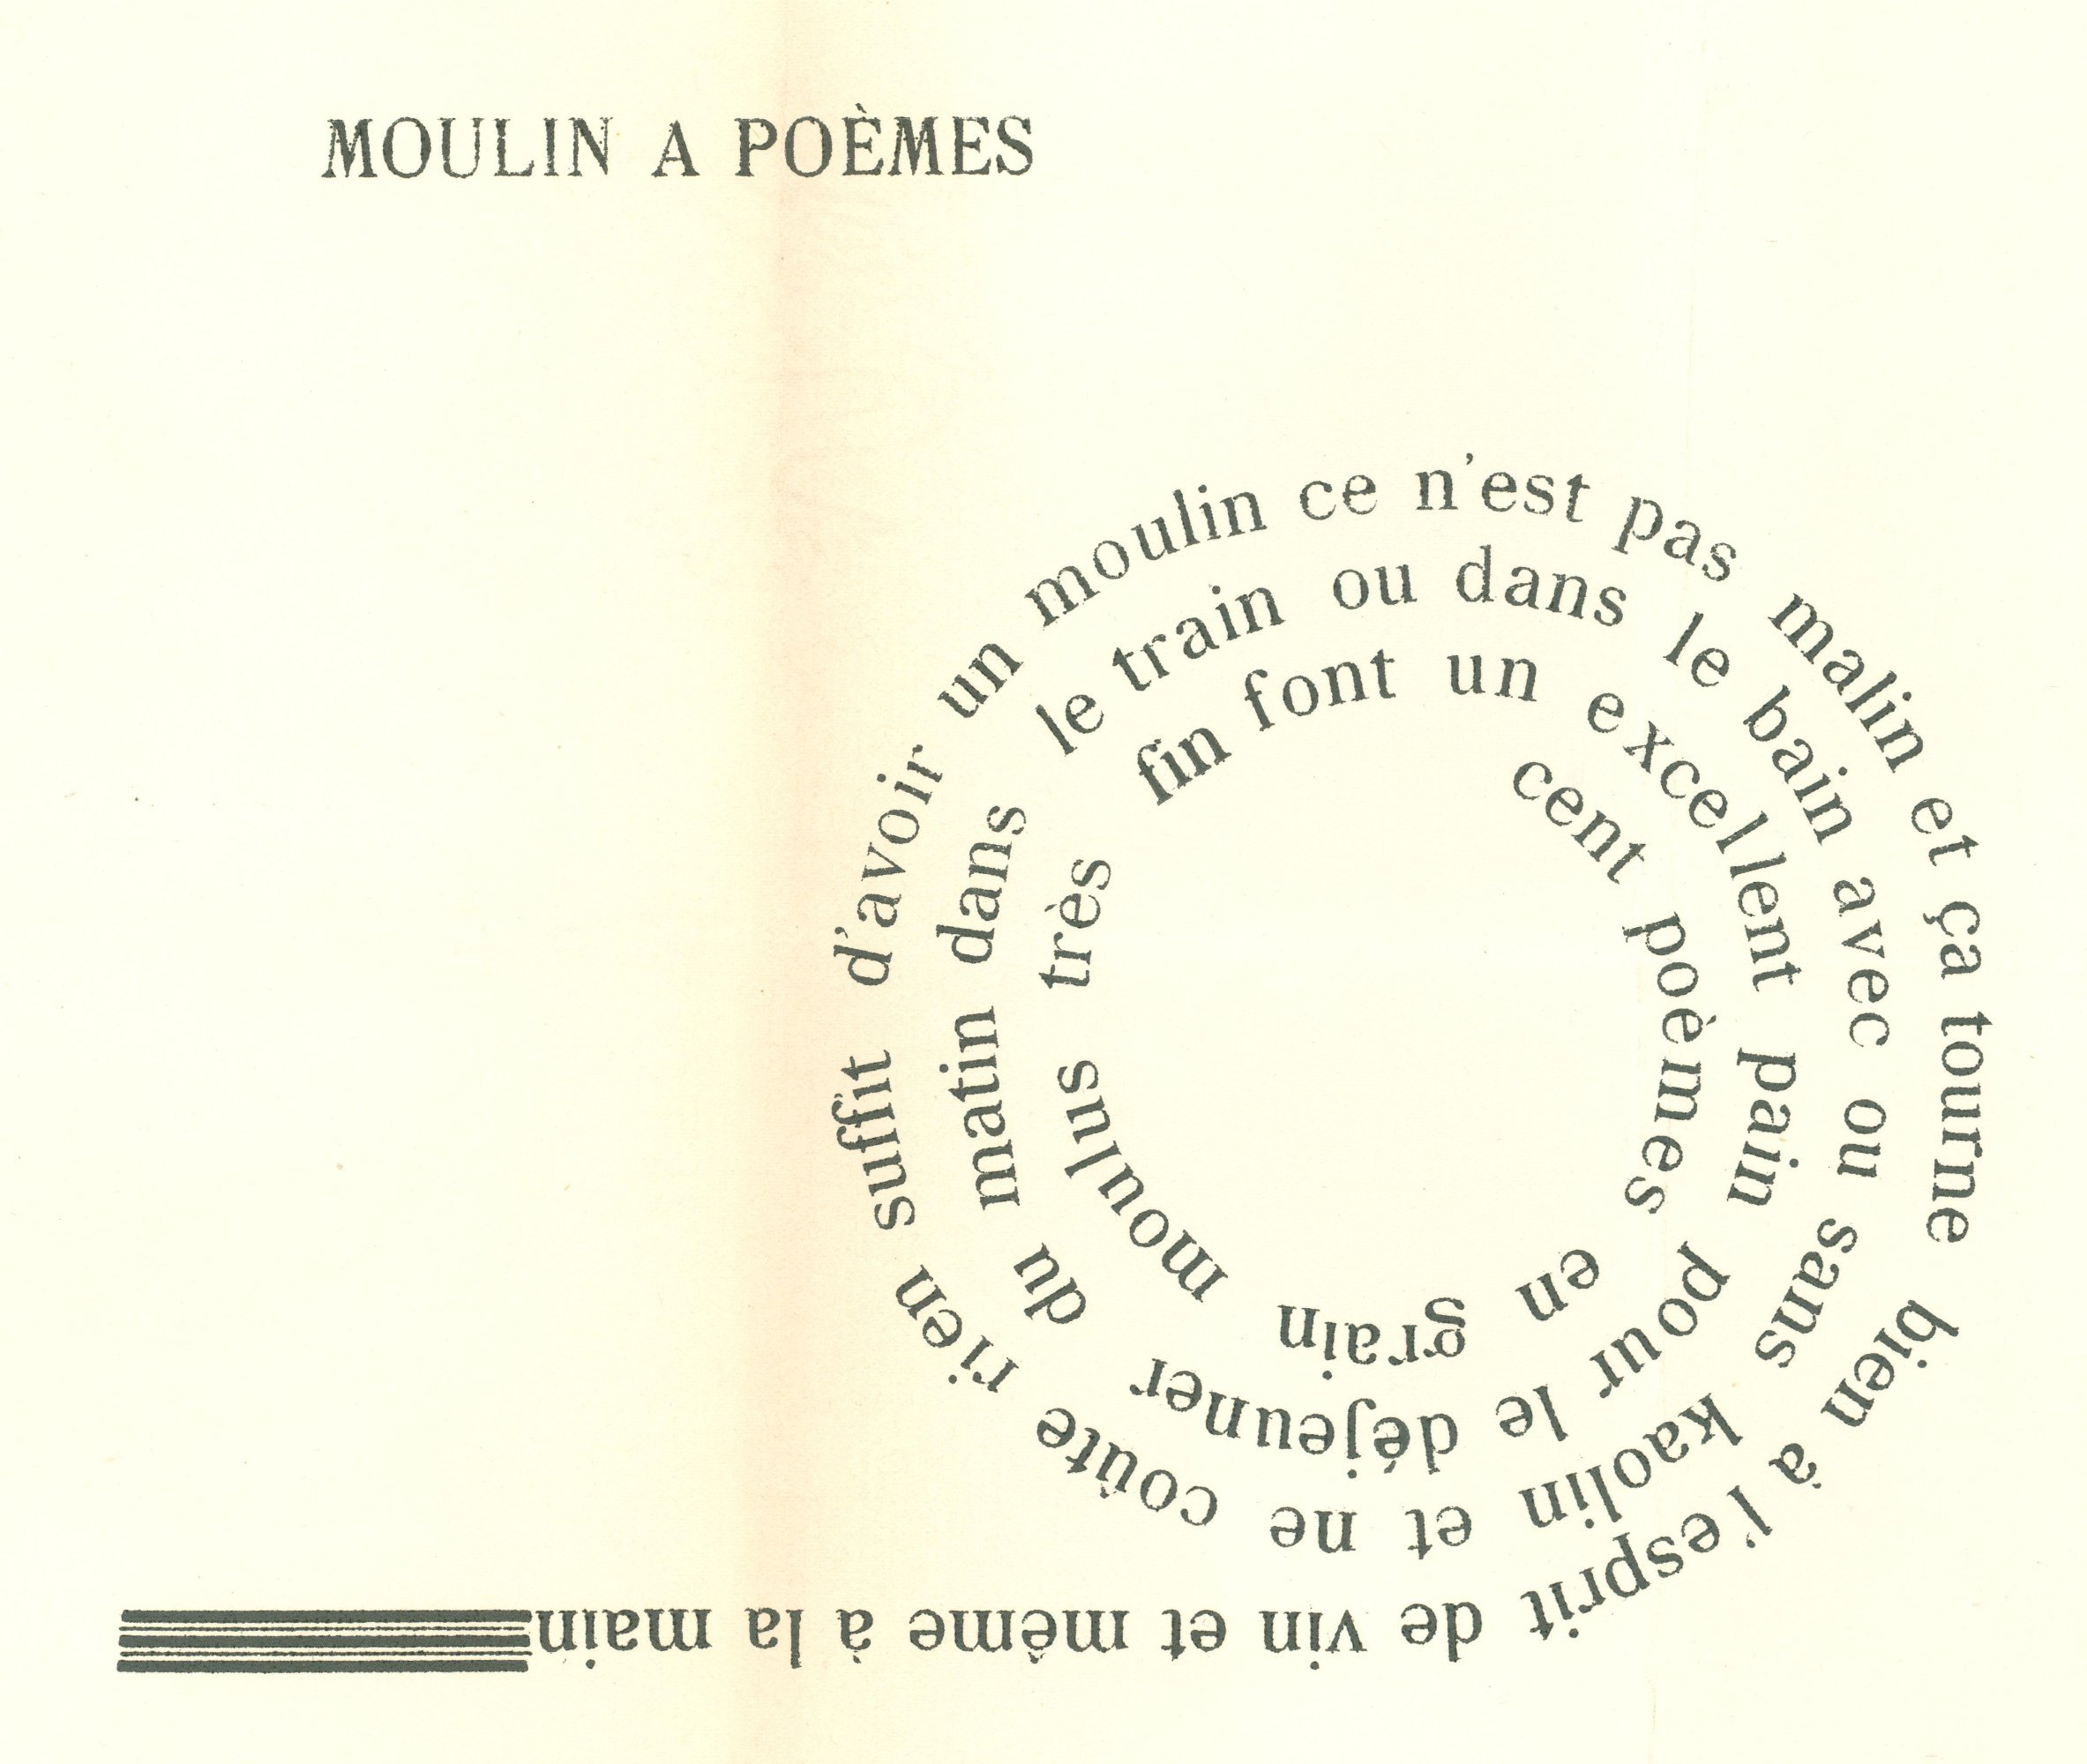 Pierre Albert-Birot, 'Moulin à poèmes', in: Deux poèmes (1955) 